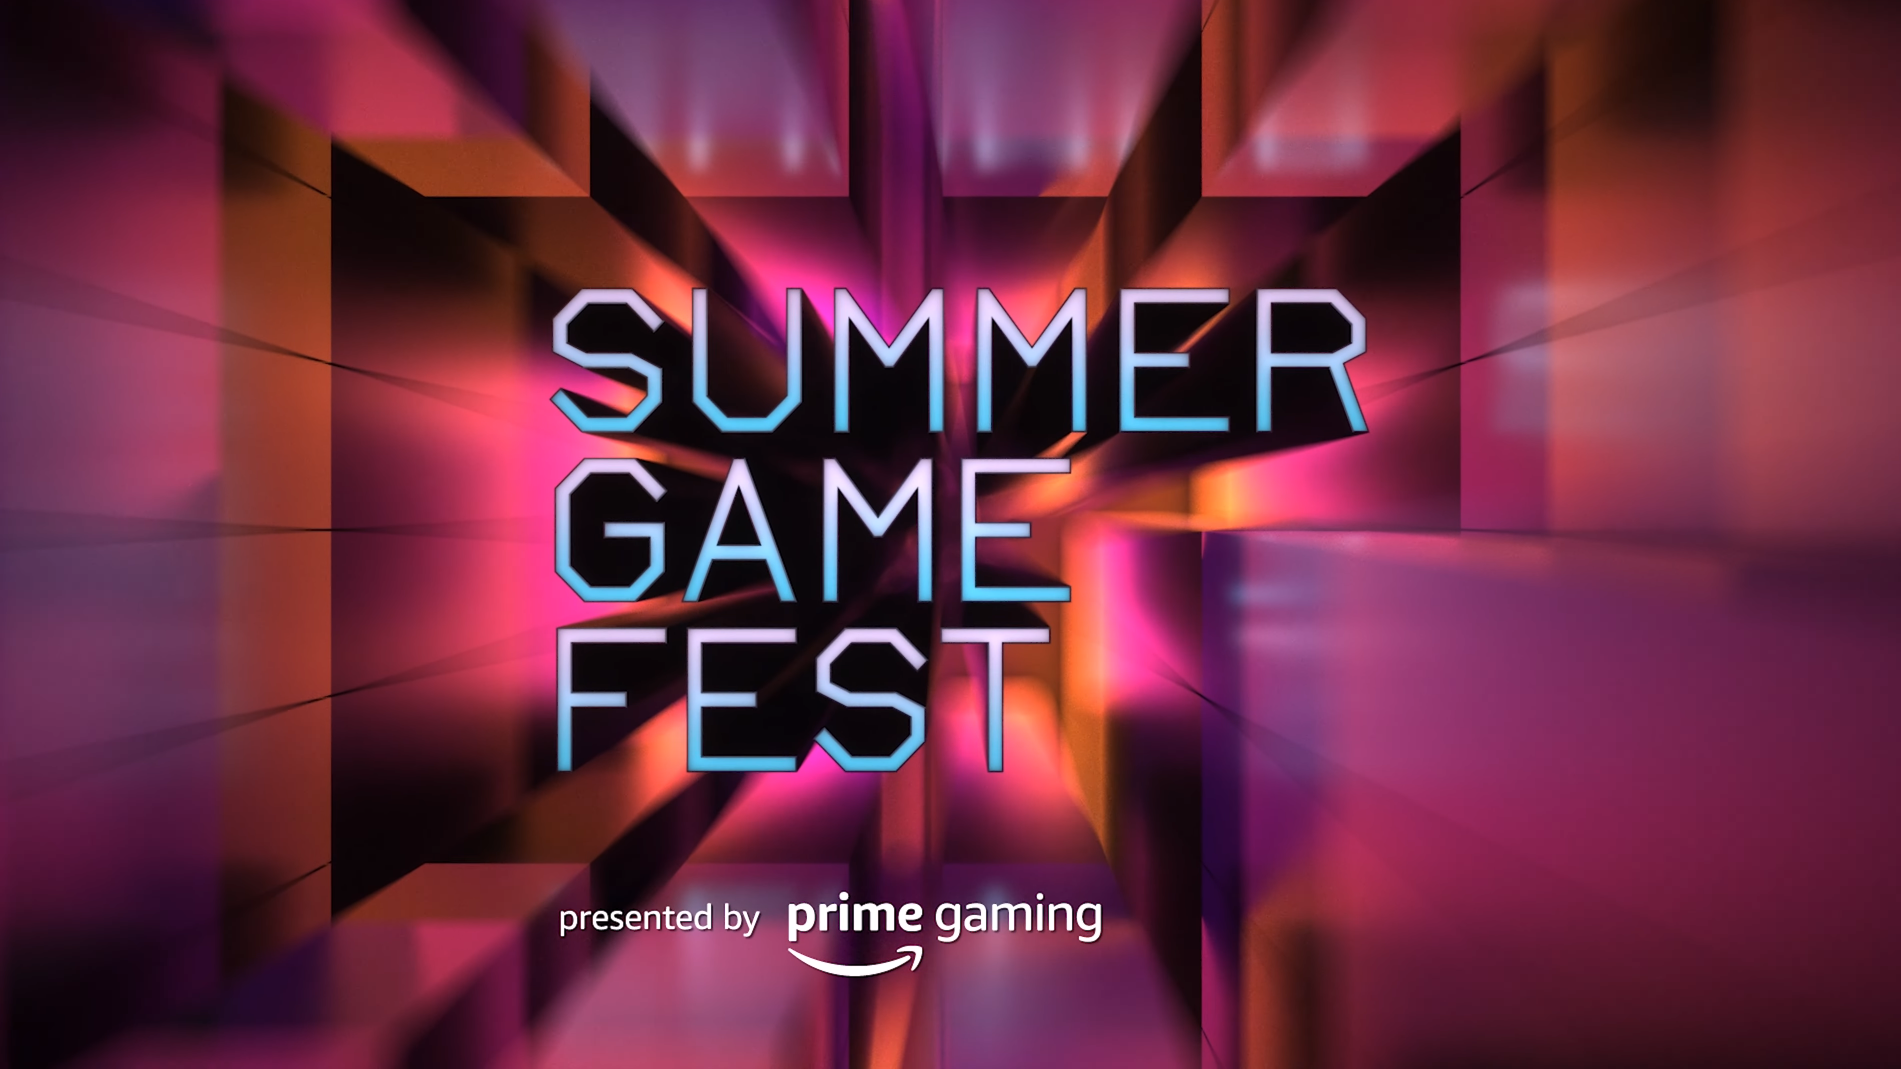 ybHGAwNhW3feyUqqJ3SMgF - E3 2022 به طور کامل لغو شد، و بلافاصله Summer Game Fest برای ژوئن تایید شد